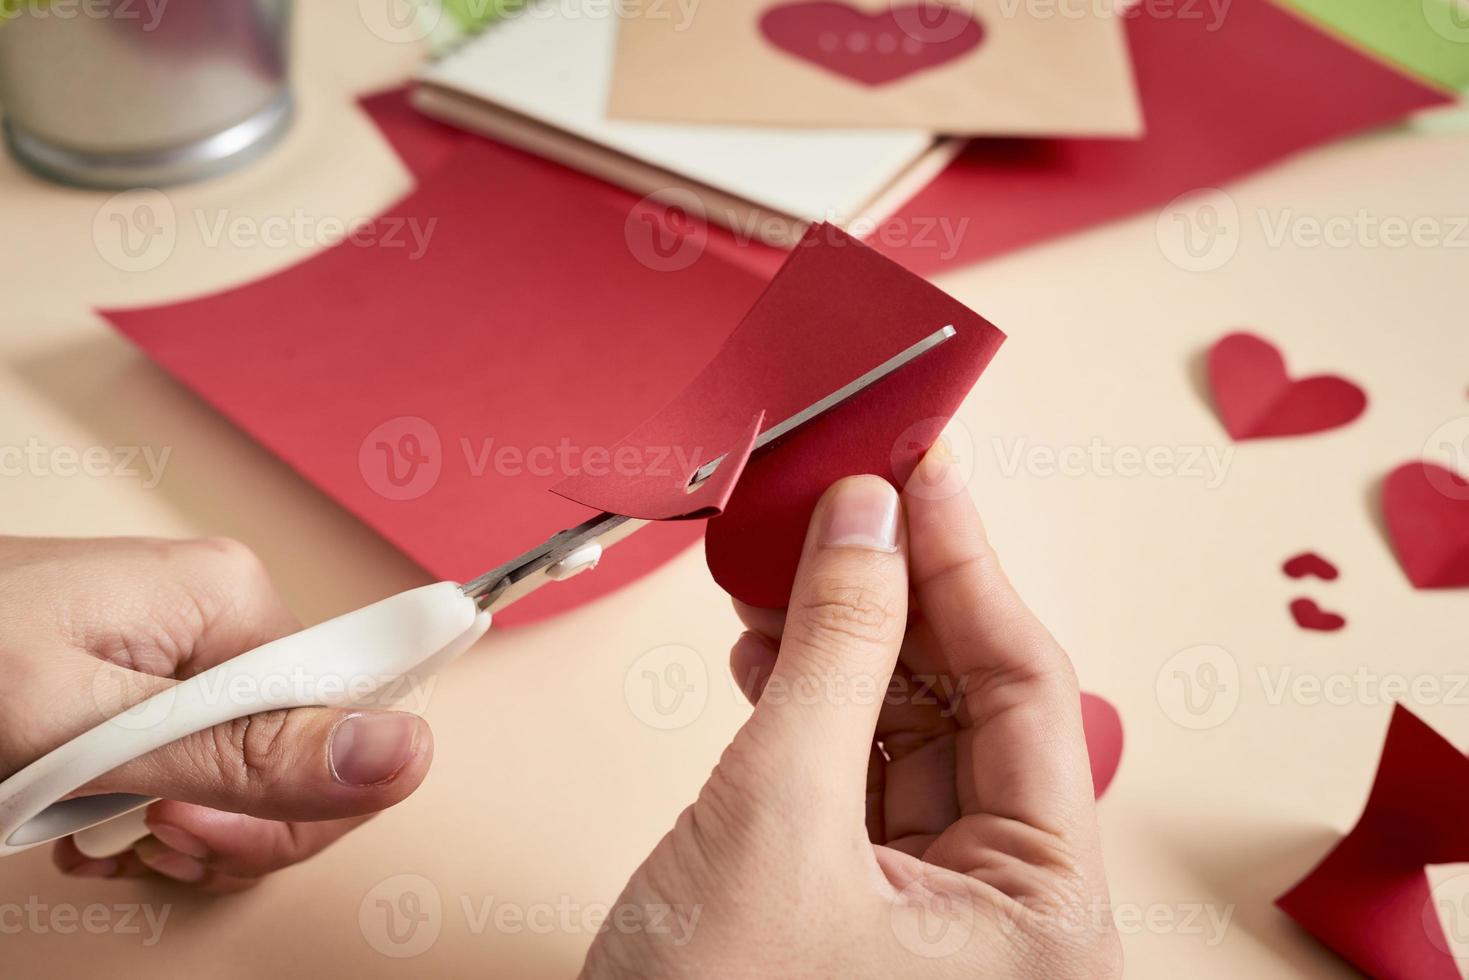 mujer corta corazones de fieltro rojo, artesanía casera para el día de san valentín, creatividad hecha a mano, vista superior foto